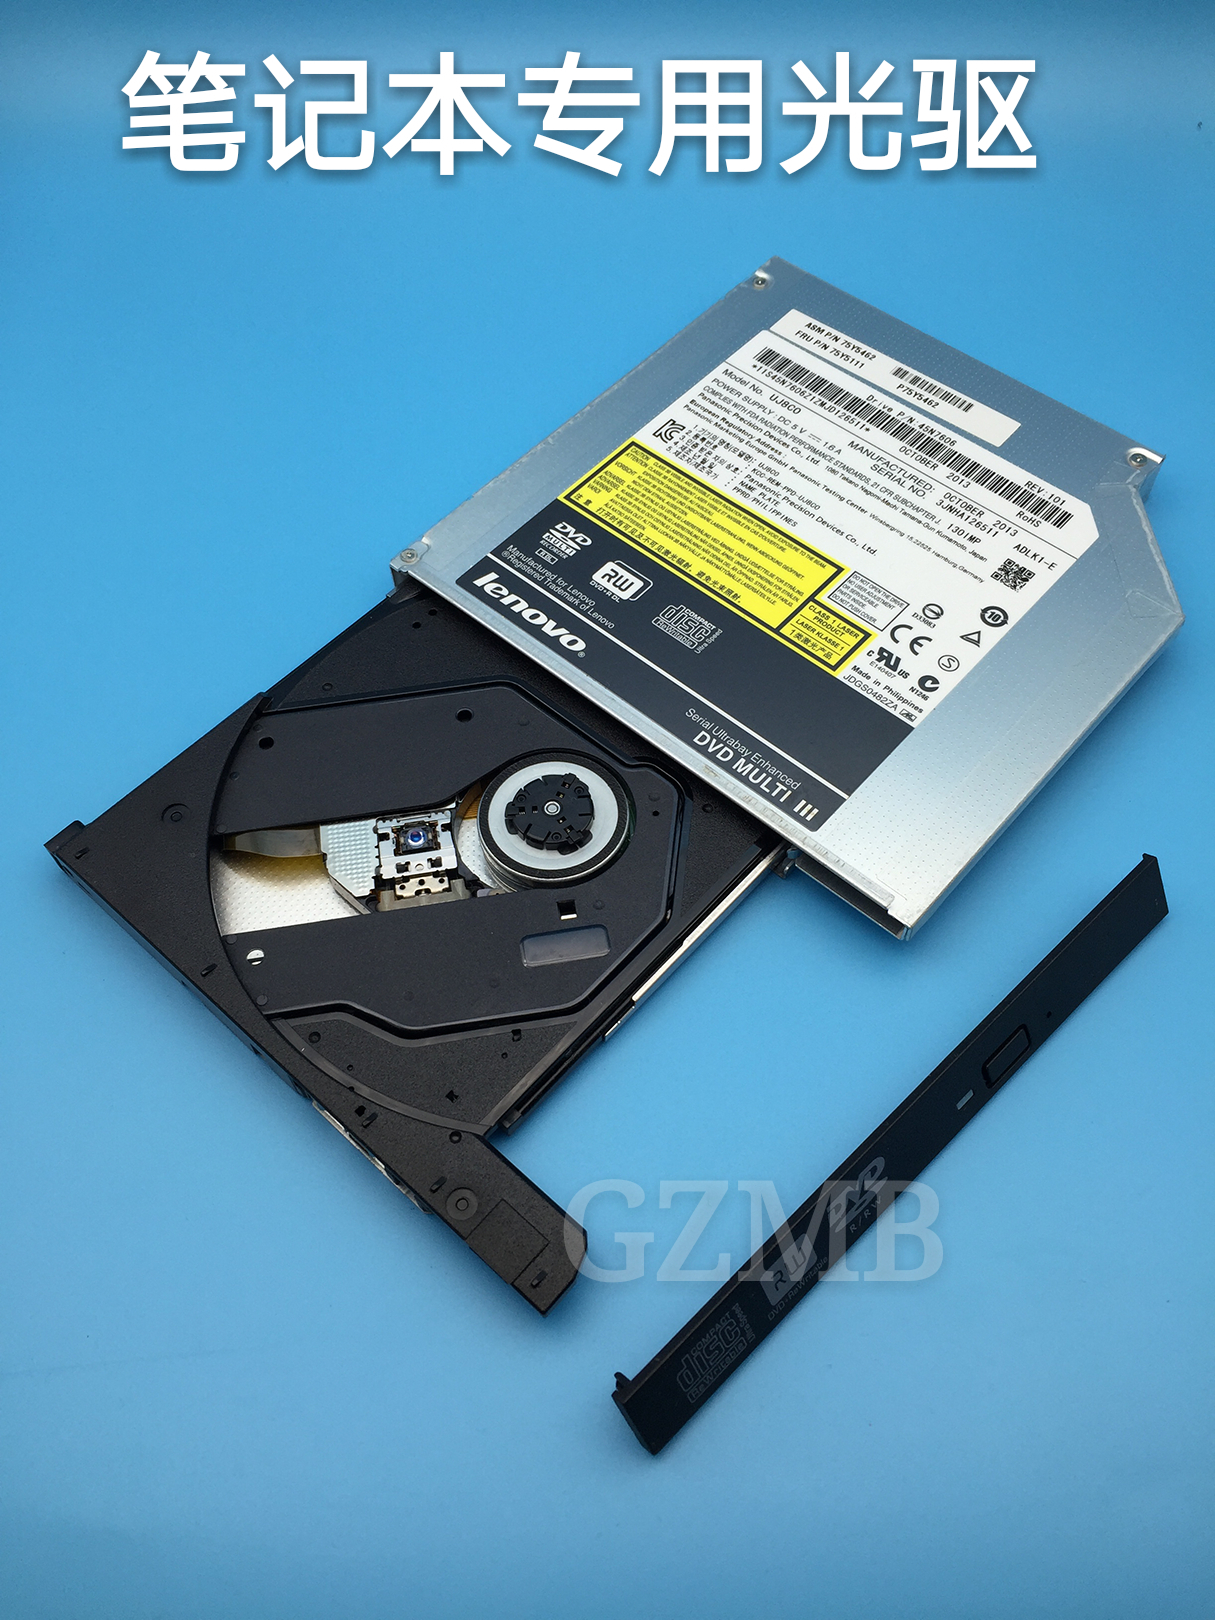 Lenovo G470 G480 G485 G490 G500 G510 Laptop Built-in CD-ROM DVD Recorder